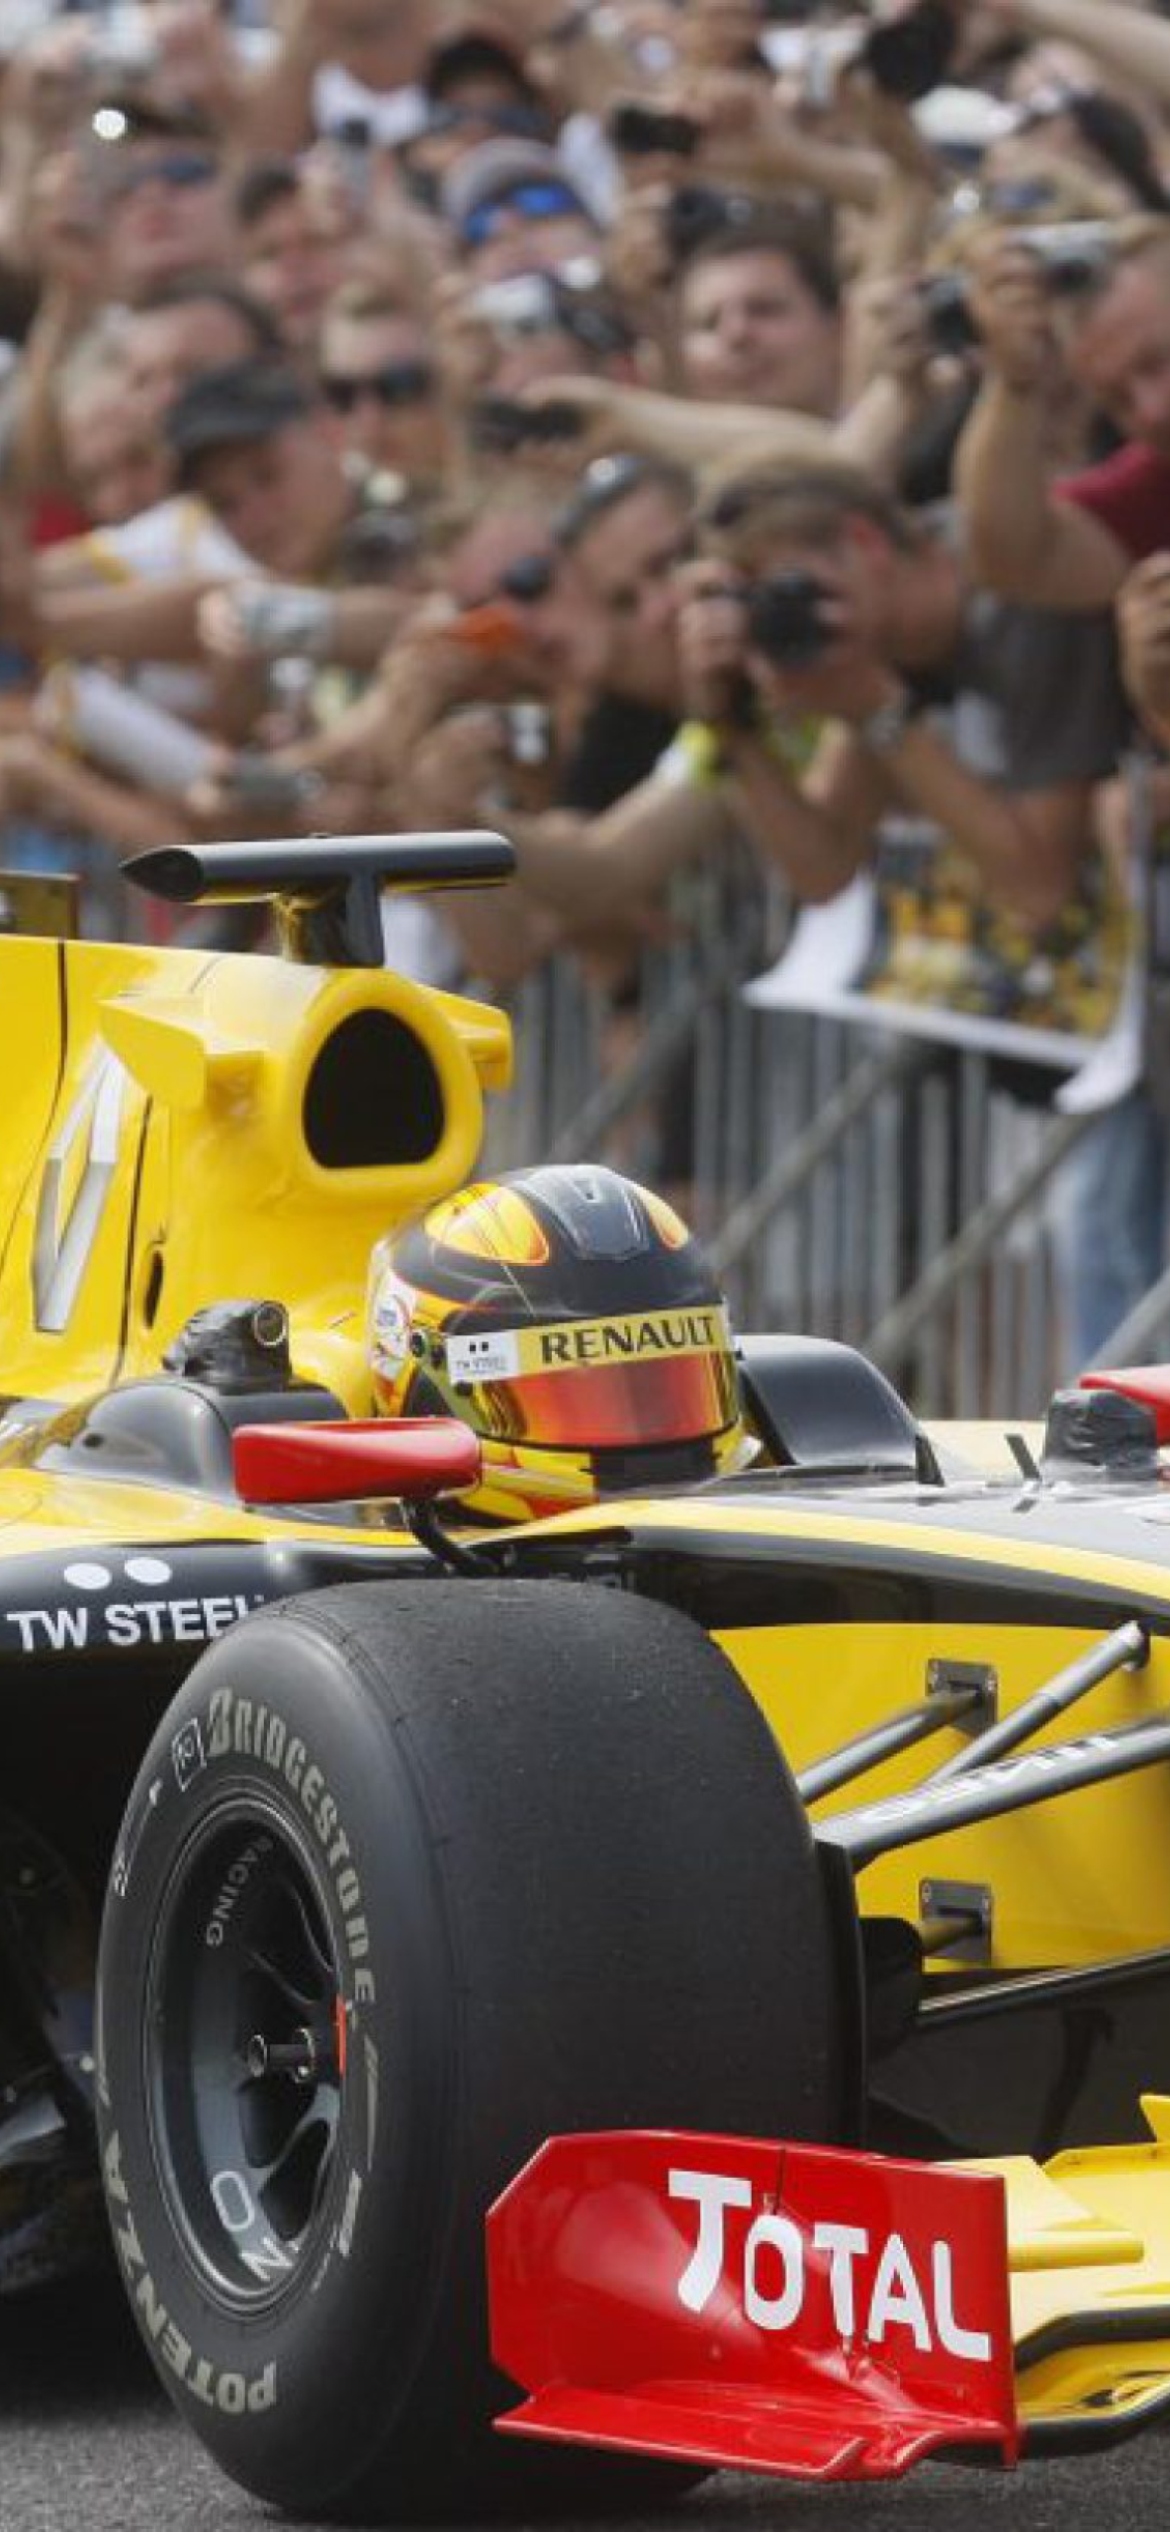 Das N-Gine Renault F1 Team Show, Robert Kubica Wallpaper 1170x2532